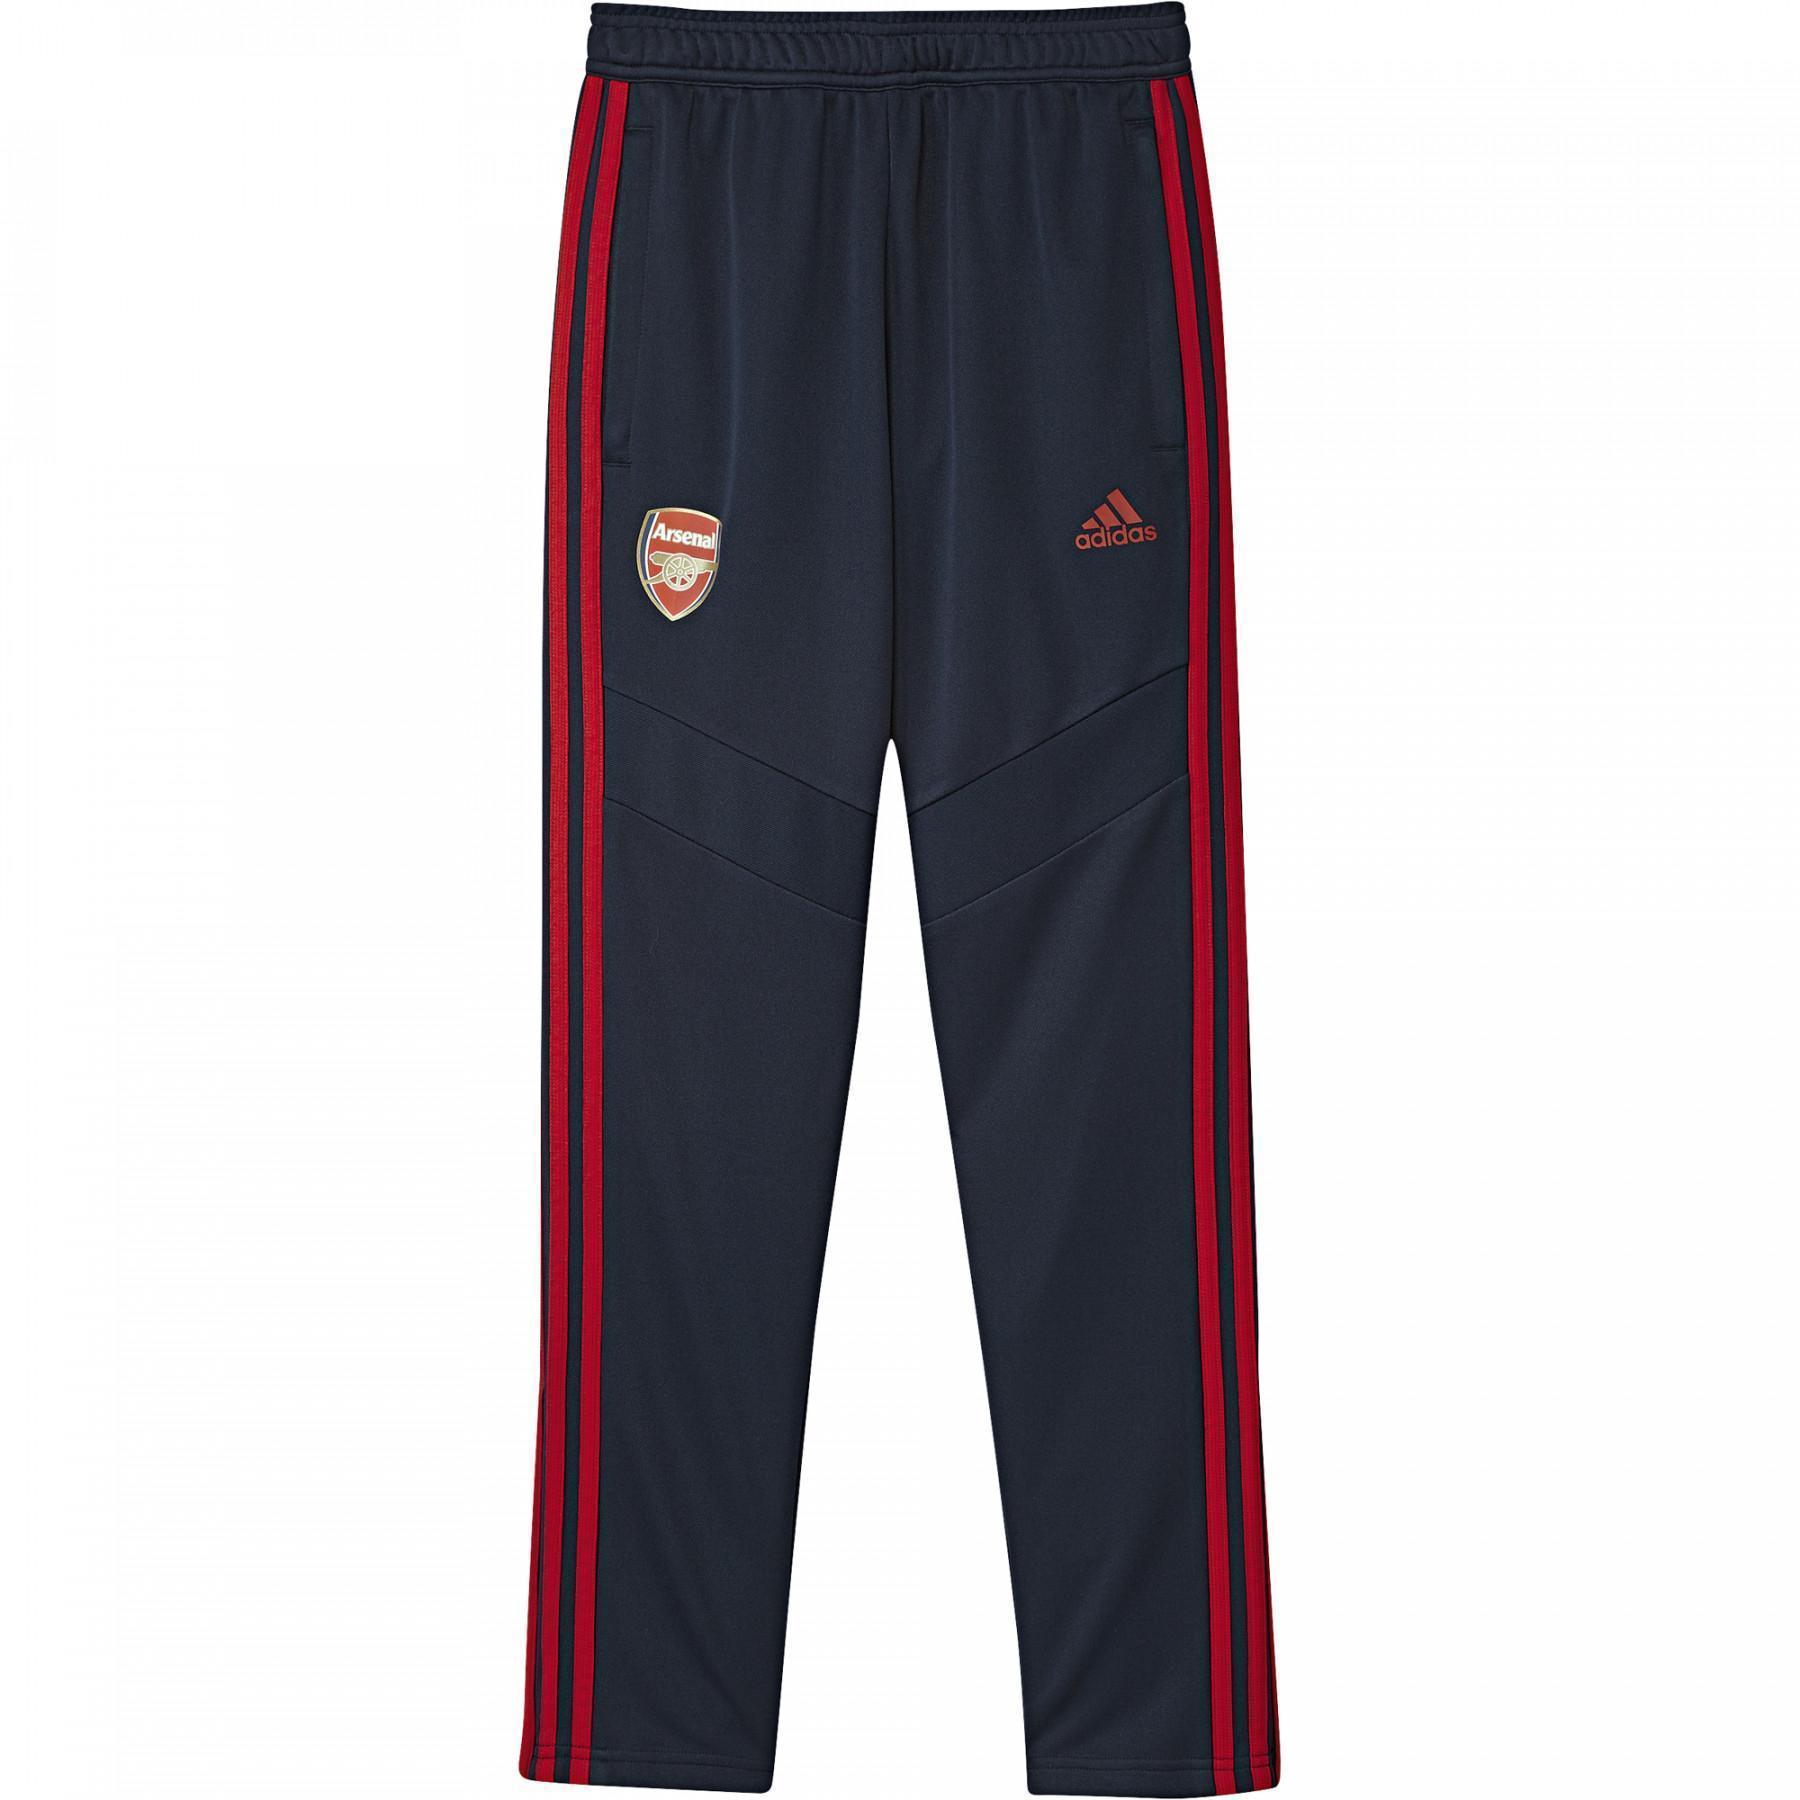 Pantalones de entrenamiento para niños Arsenal 2019/20